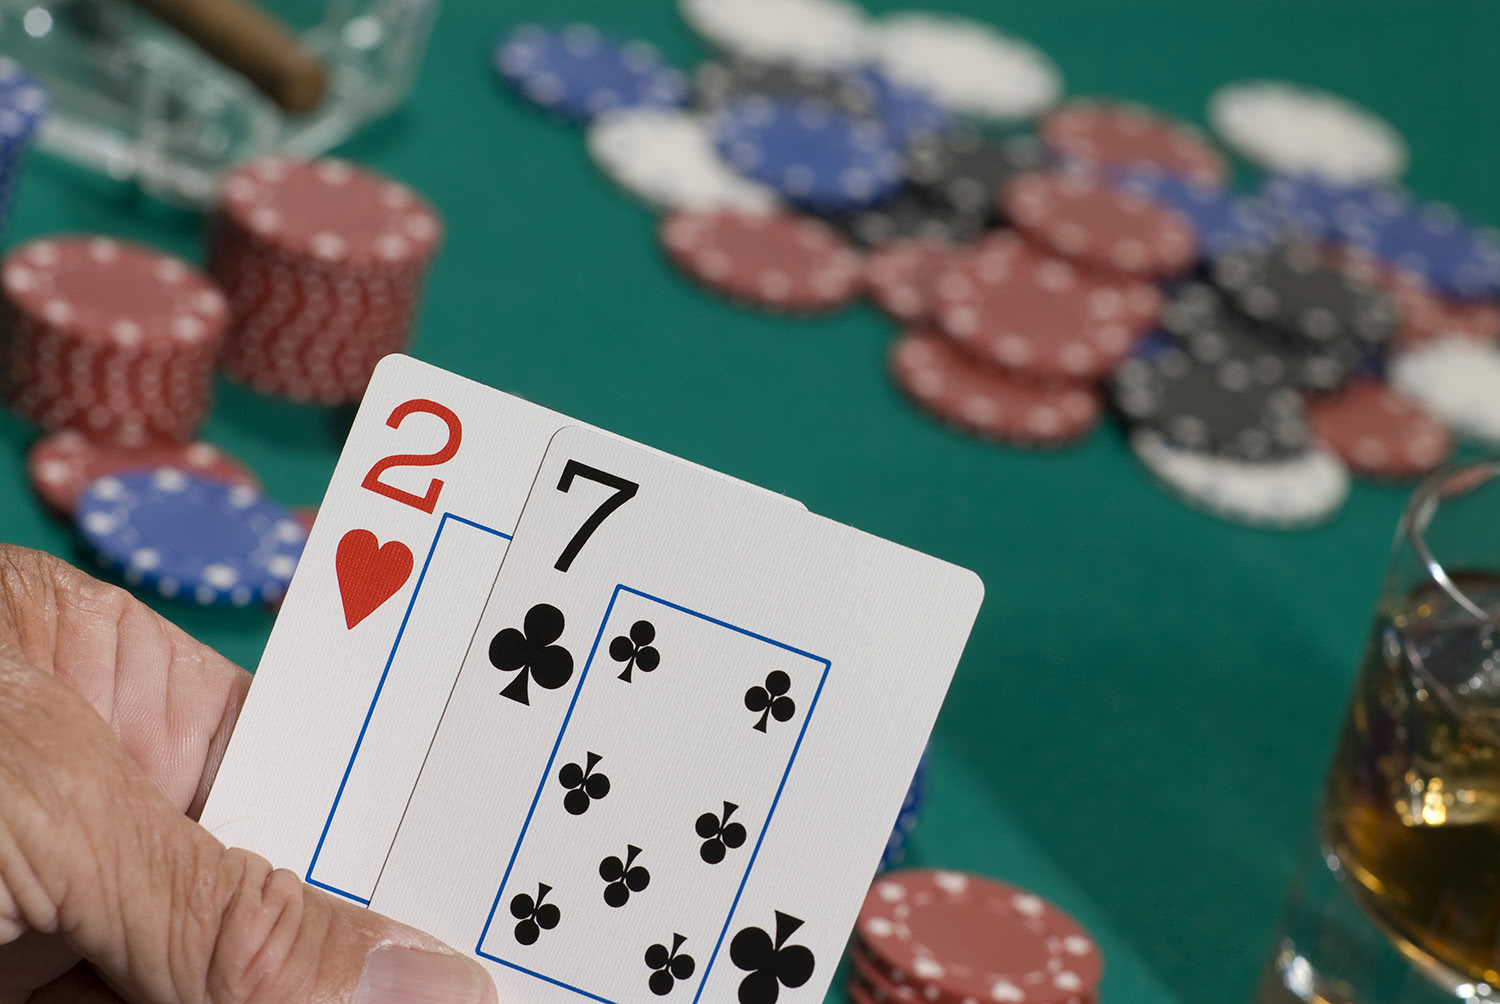 Правила игры казино холдем стрип покер видео онлайн